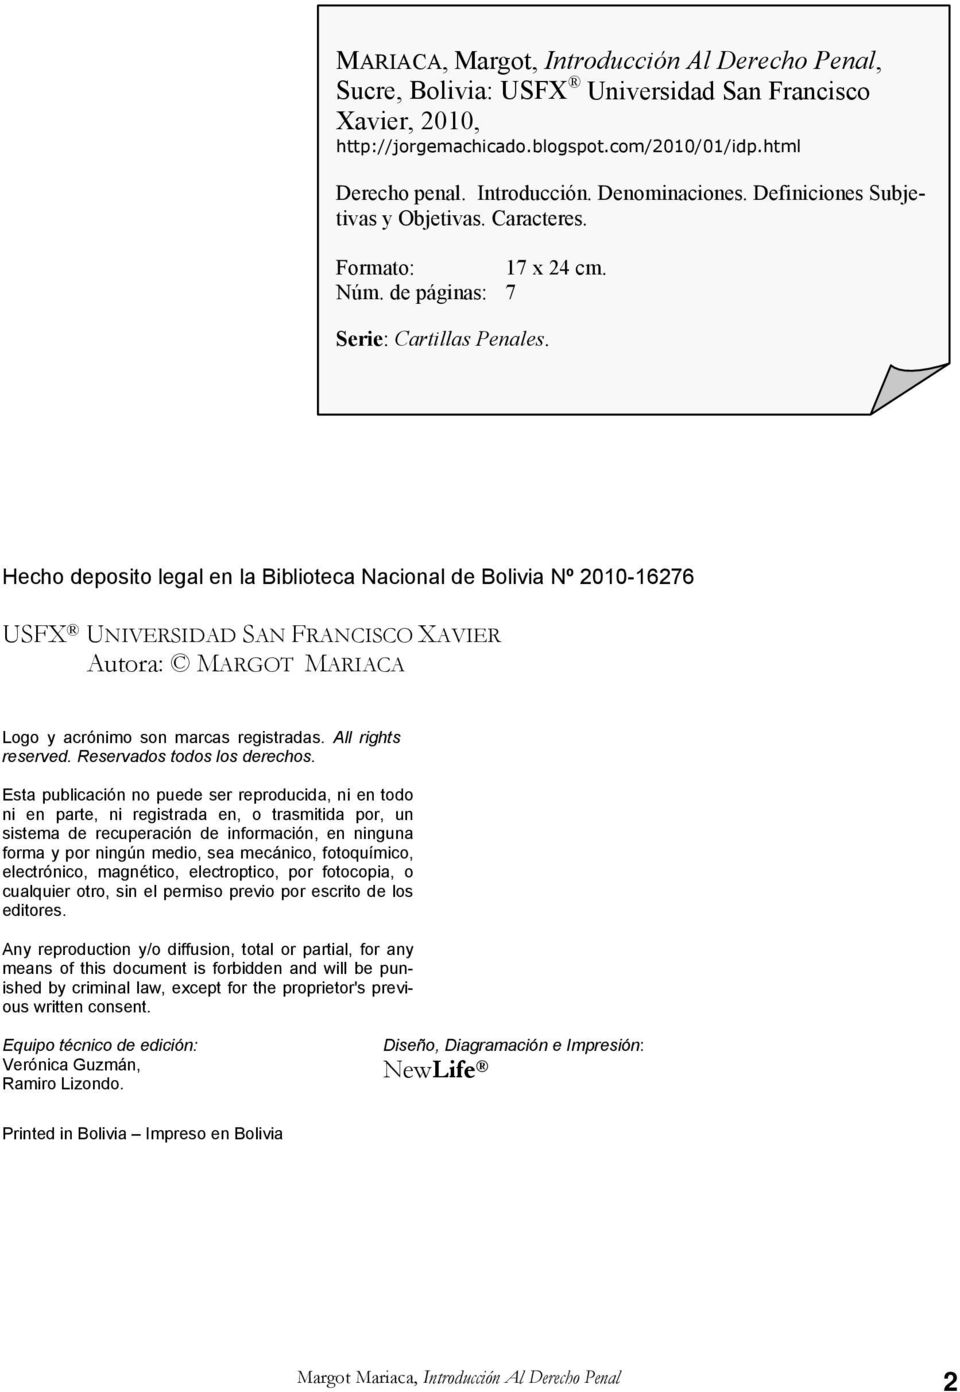 Hecho deposito legal en la Biblioteca Nacional de Bolivia Nº 2010-16276 USFX UNIVERSIDAD SAN FRANCISCO XAVIER Autora: MARGOT MARIACA Logo y acrónimo son marcas registradas. All rights reserved.